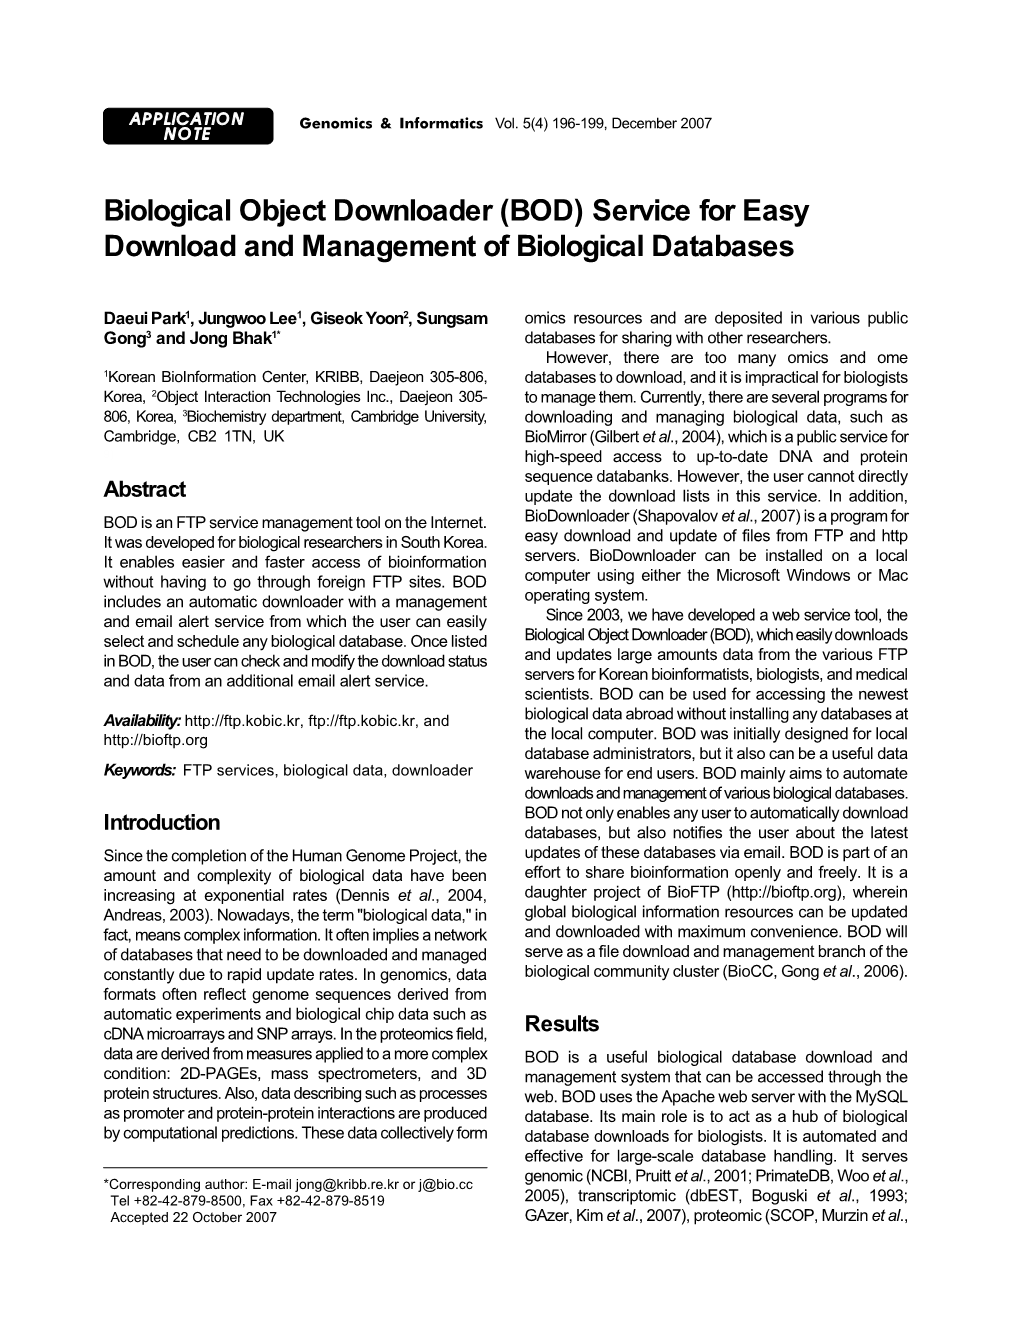 Biological Object Downloader (BOD) Service for Easy Download and Management of Biological Databases